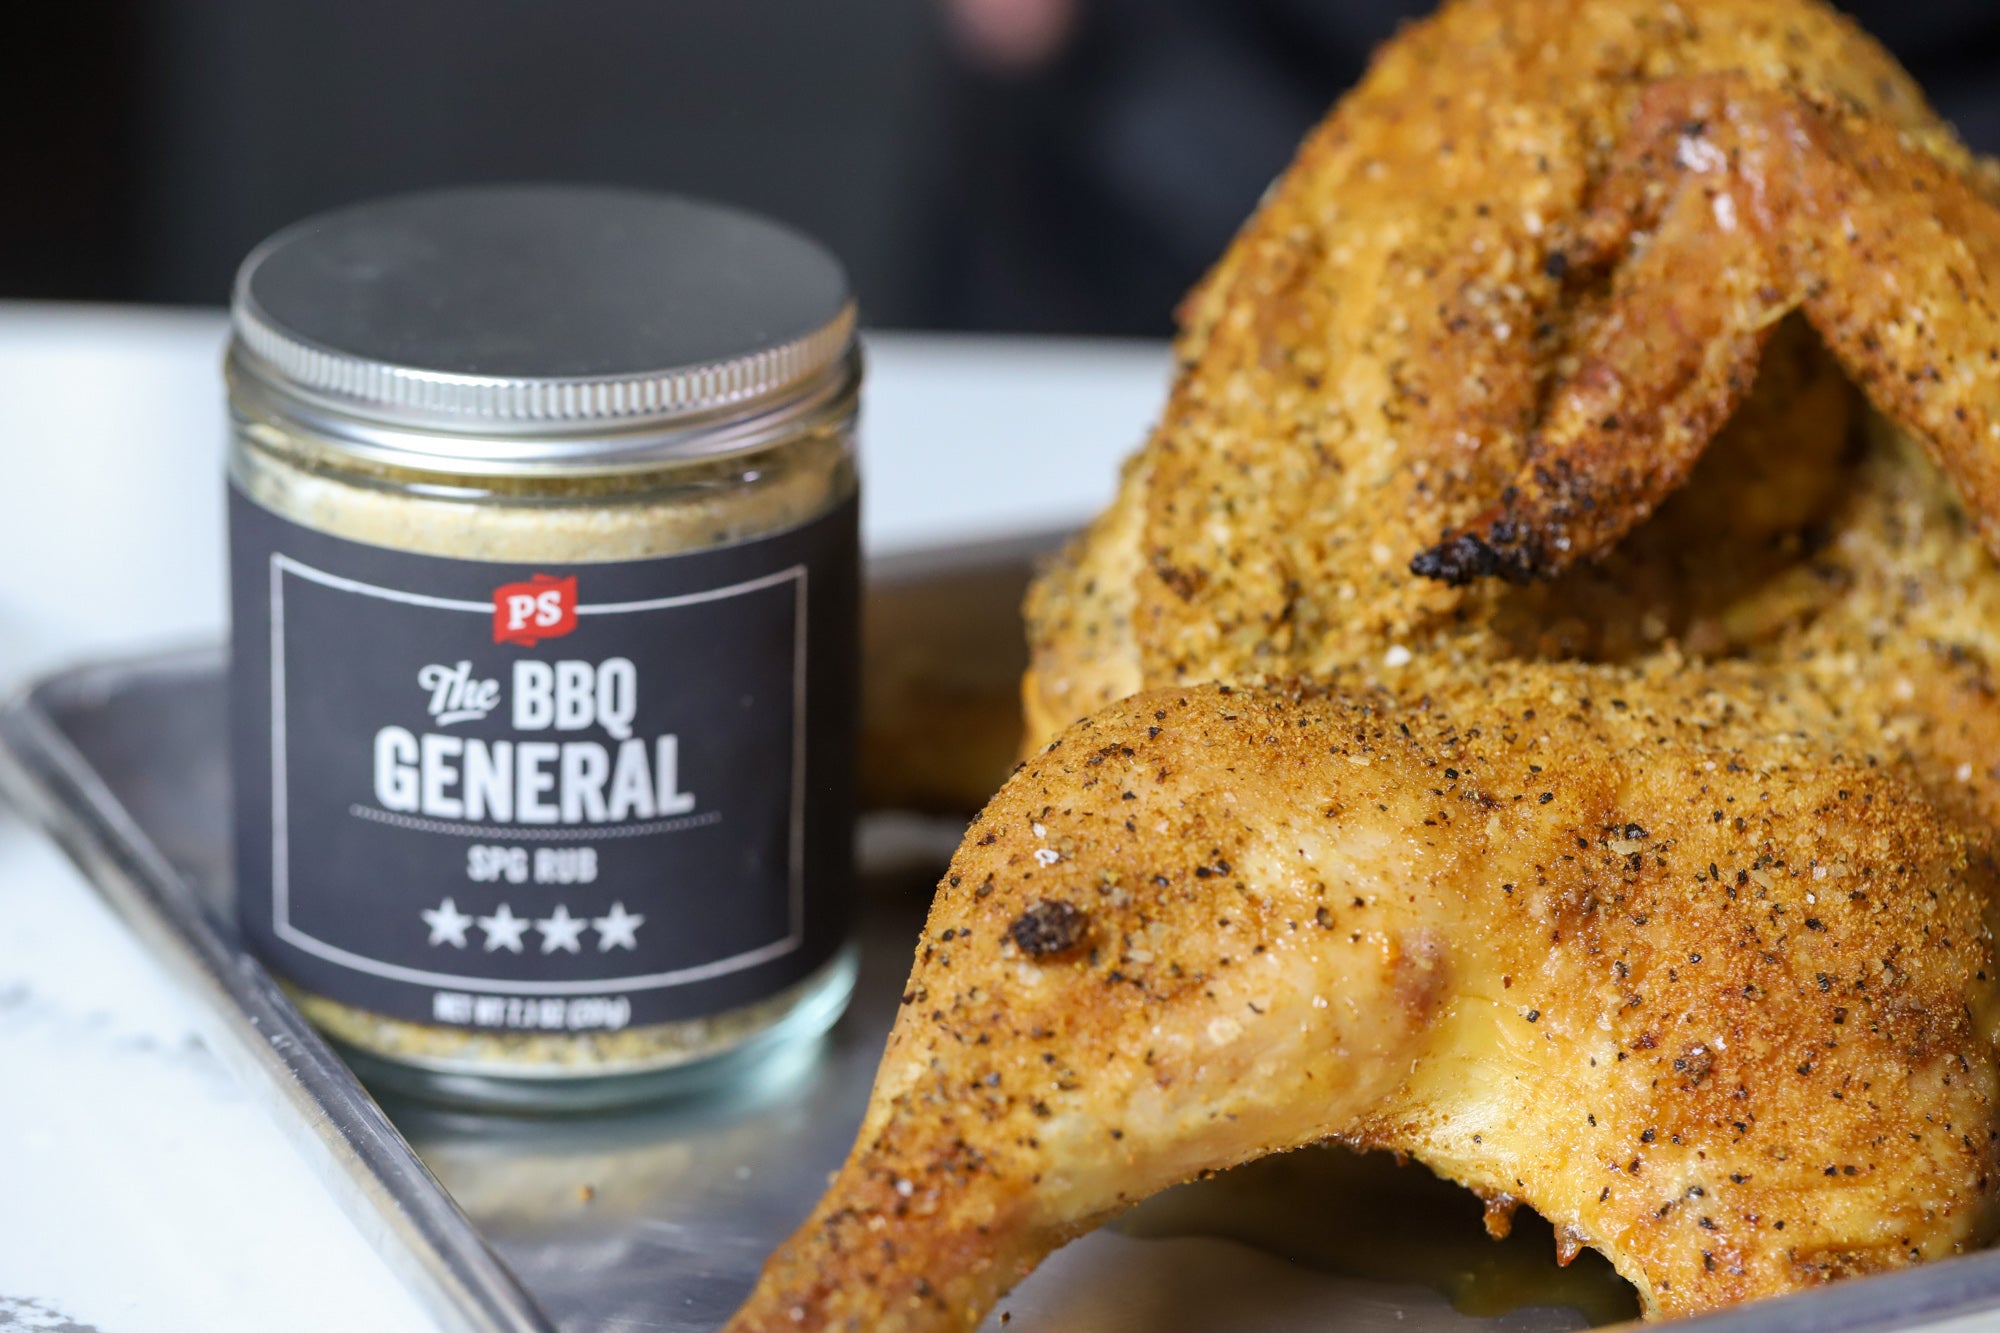 The BBQ General - SPG Seasoning Rub - PS Seasoning